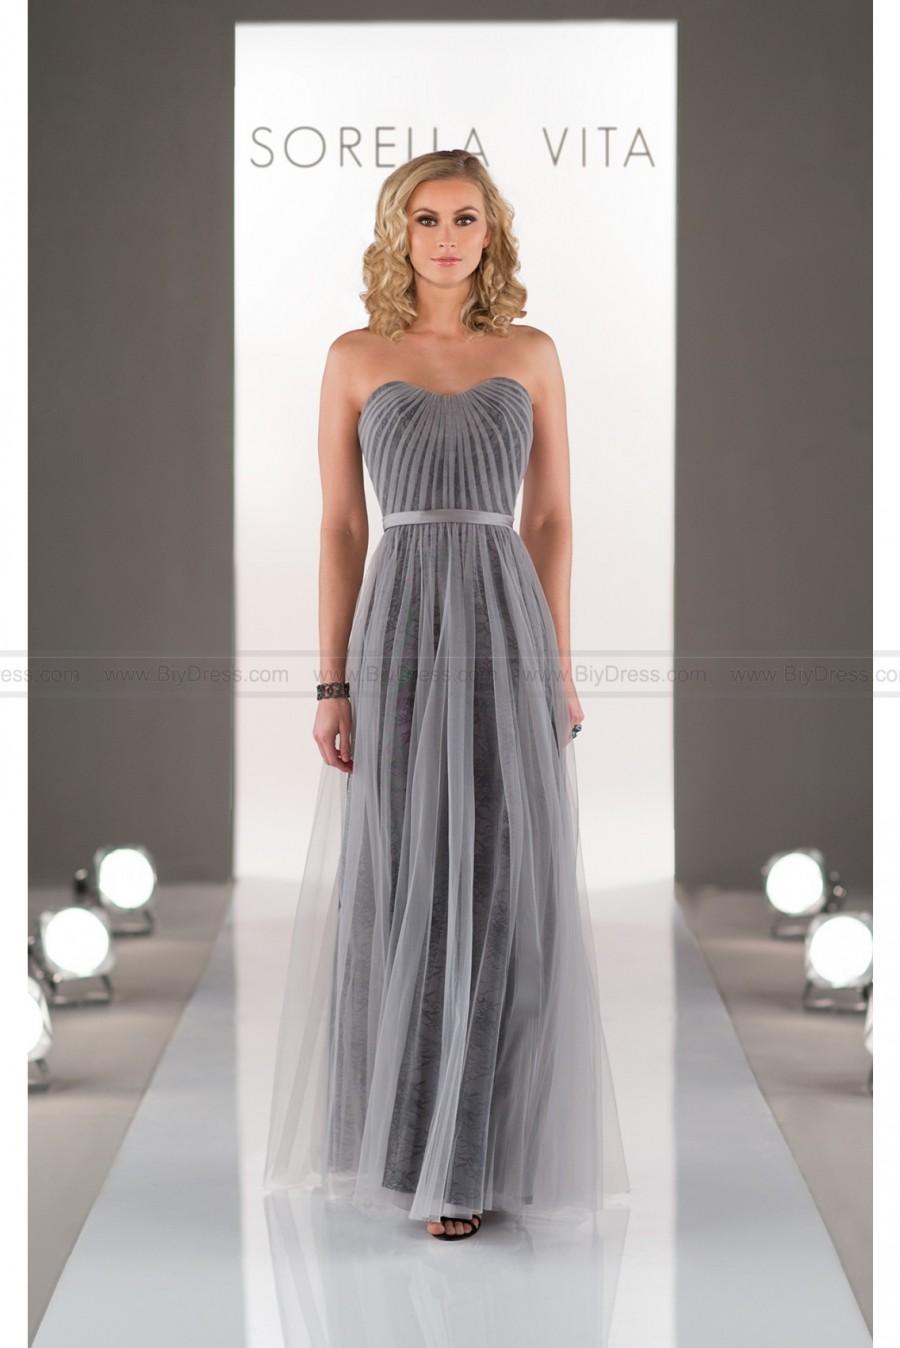 زفاف - Sorella Vita Sheath Bridesmaid Dress In Tulle Style 8501